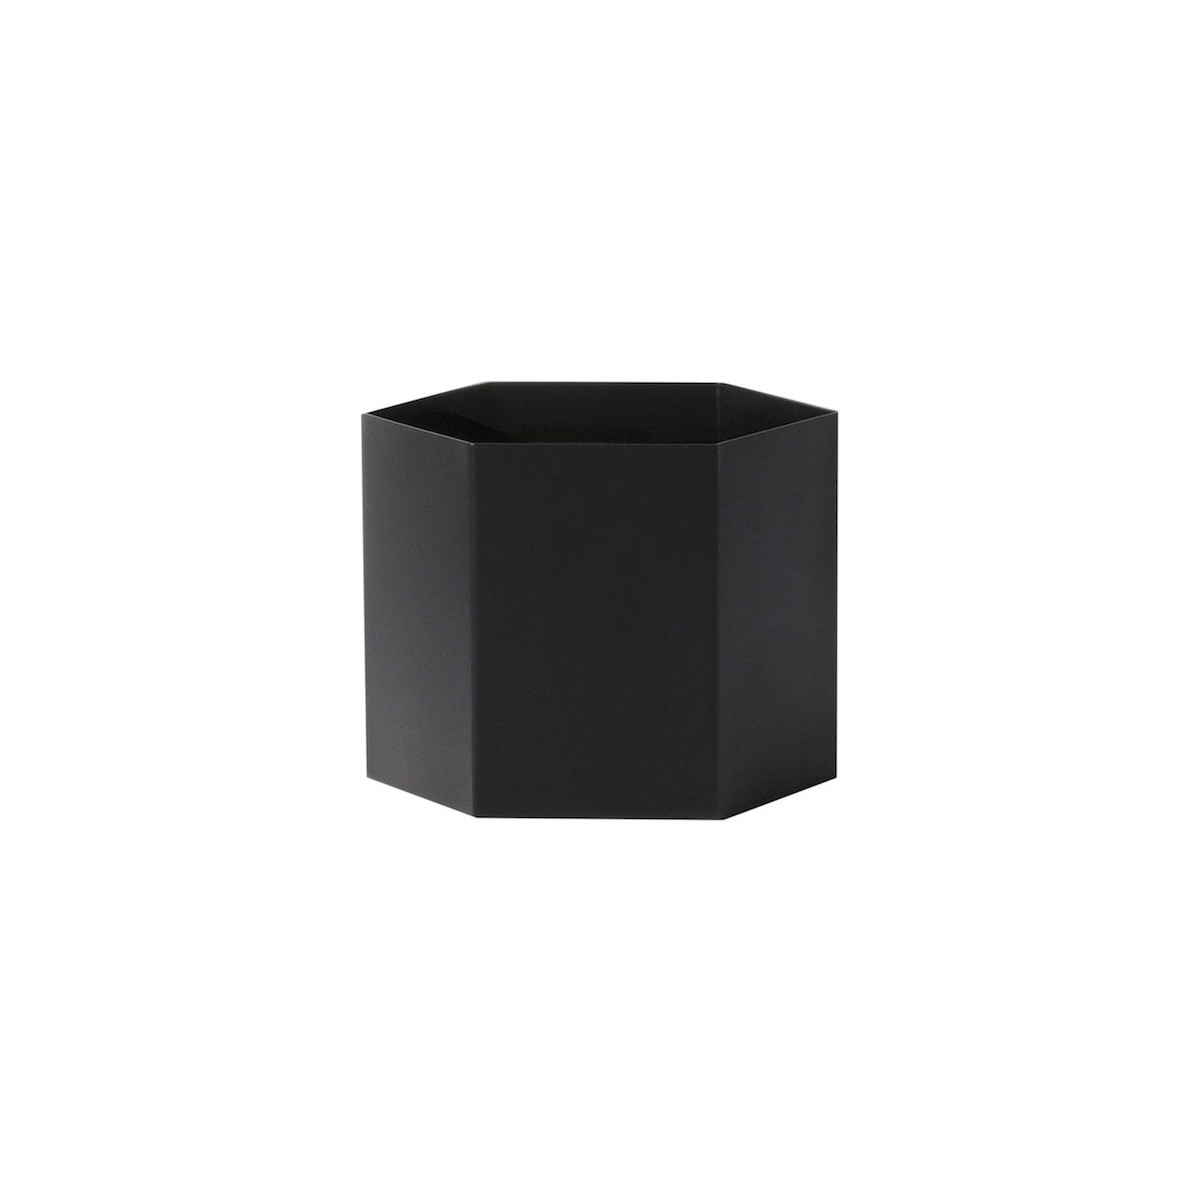 XL - black - Hexagon pot